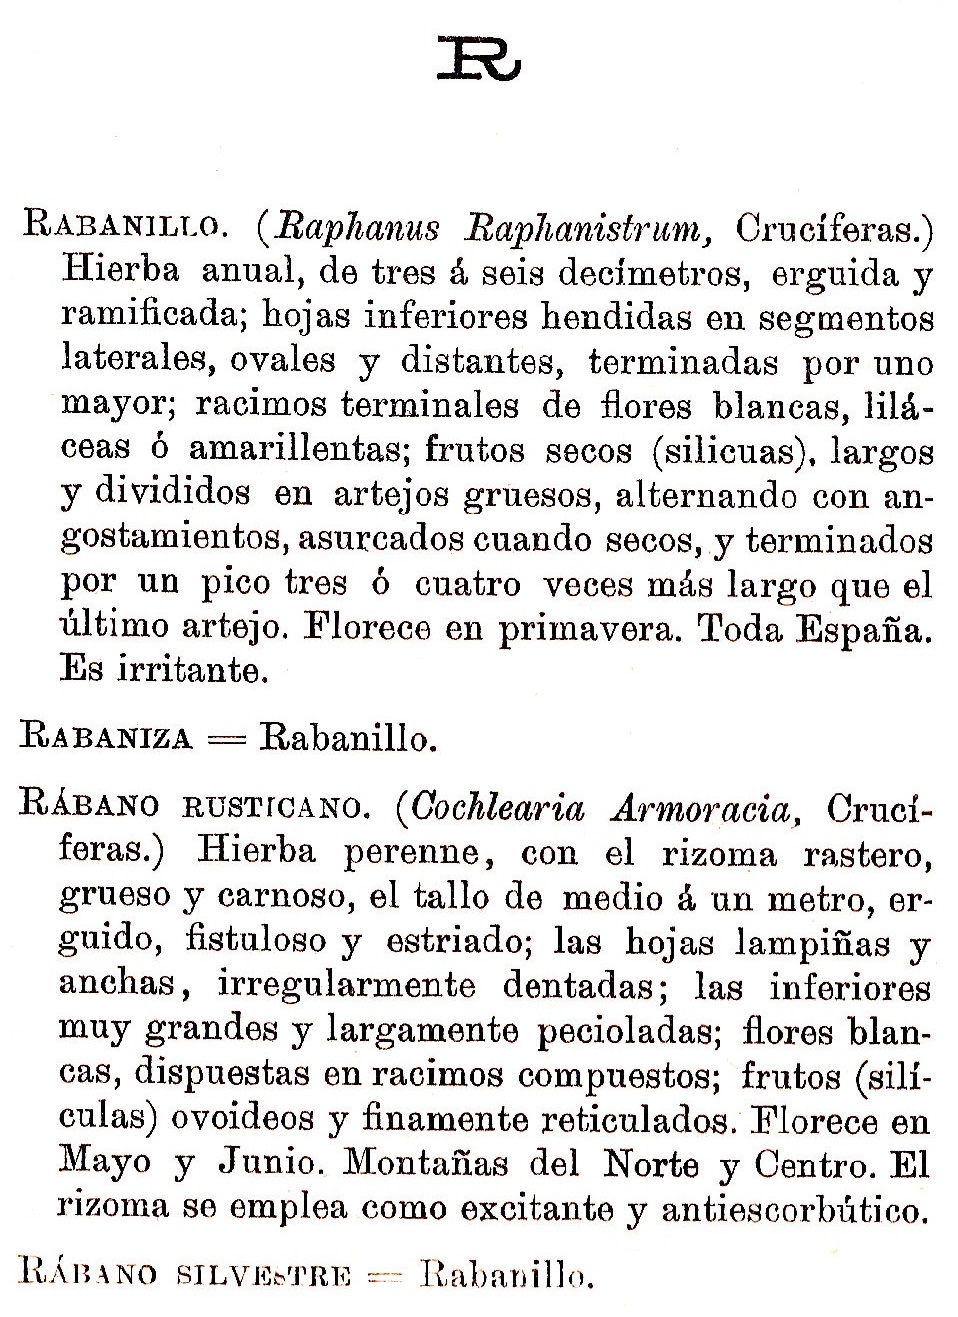 Plantas Medicinales. Blas Lazaro Ibiza. Índice alfabético de plantas. R. Rabanillo.